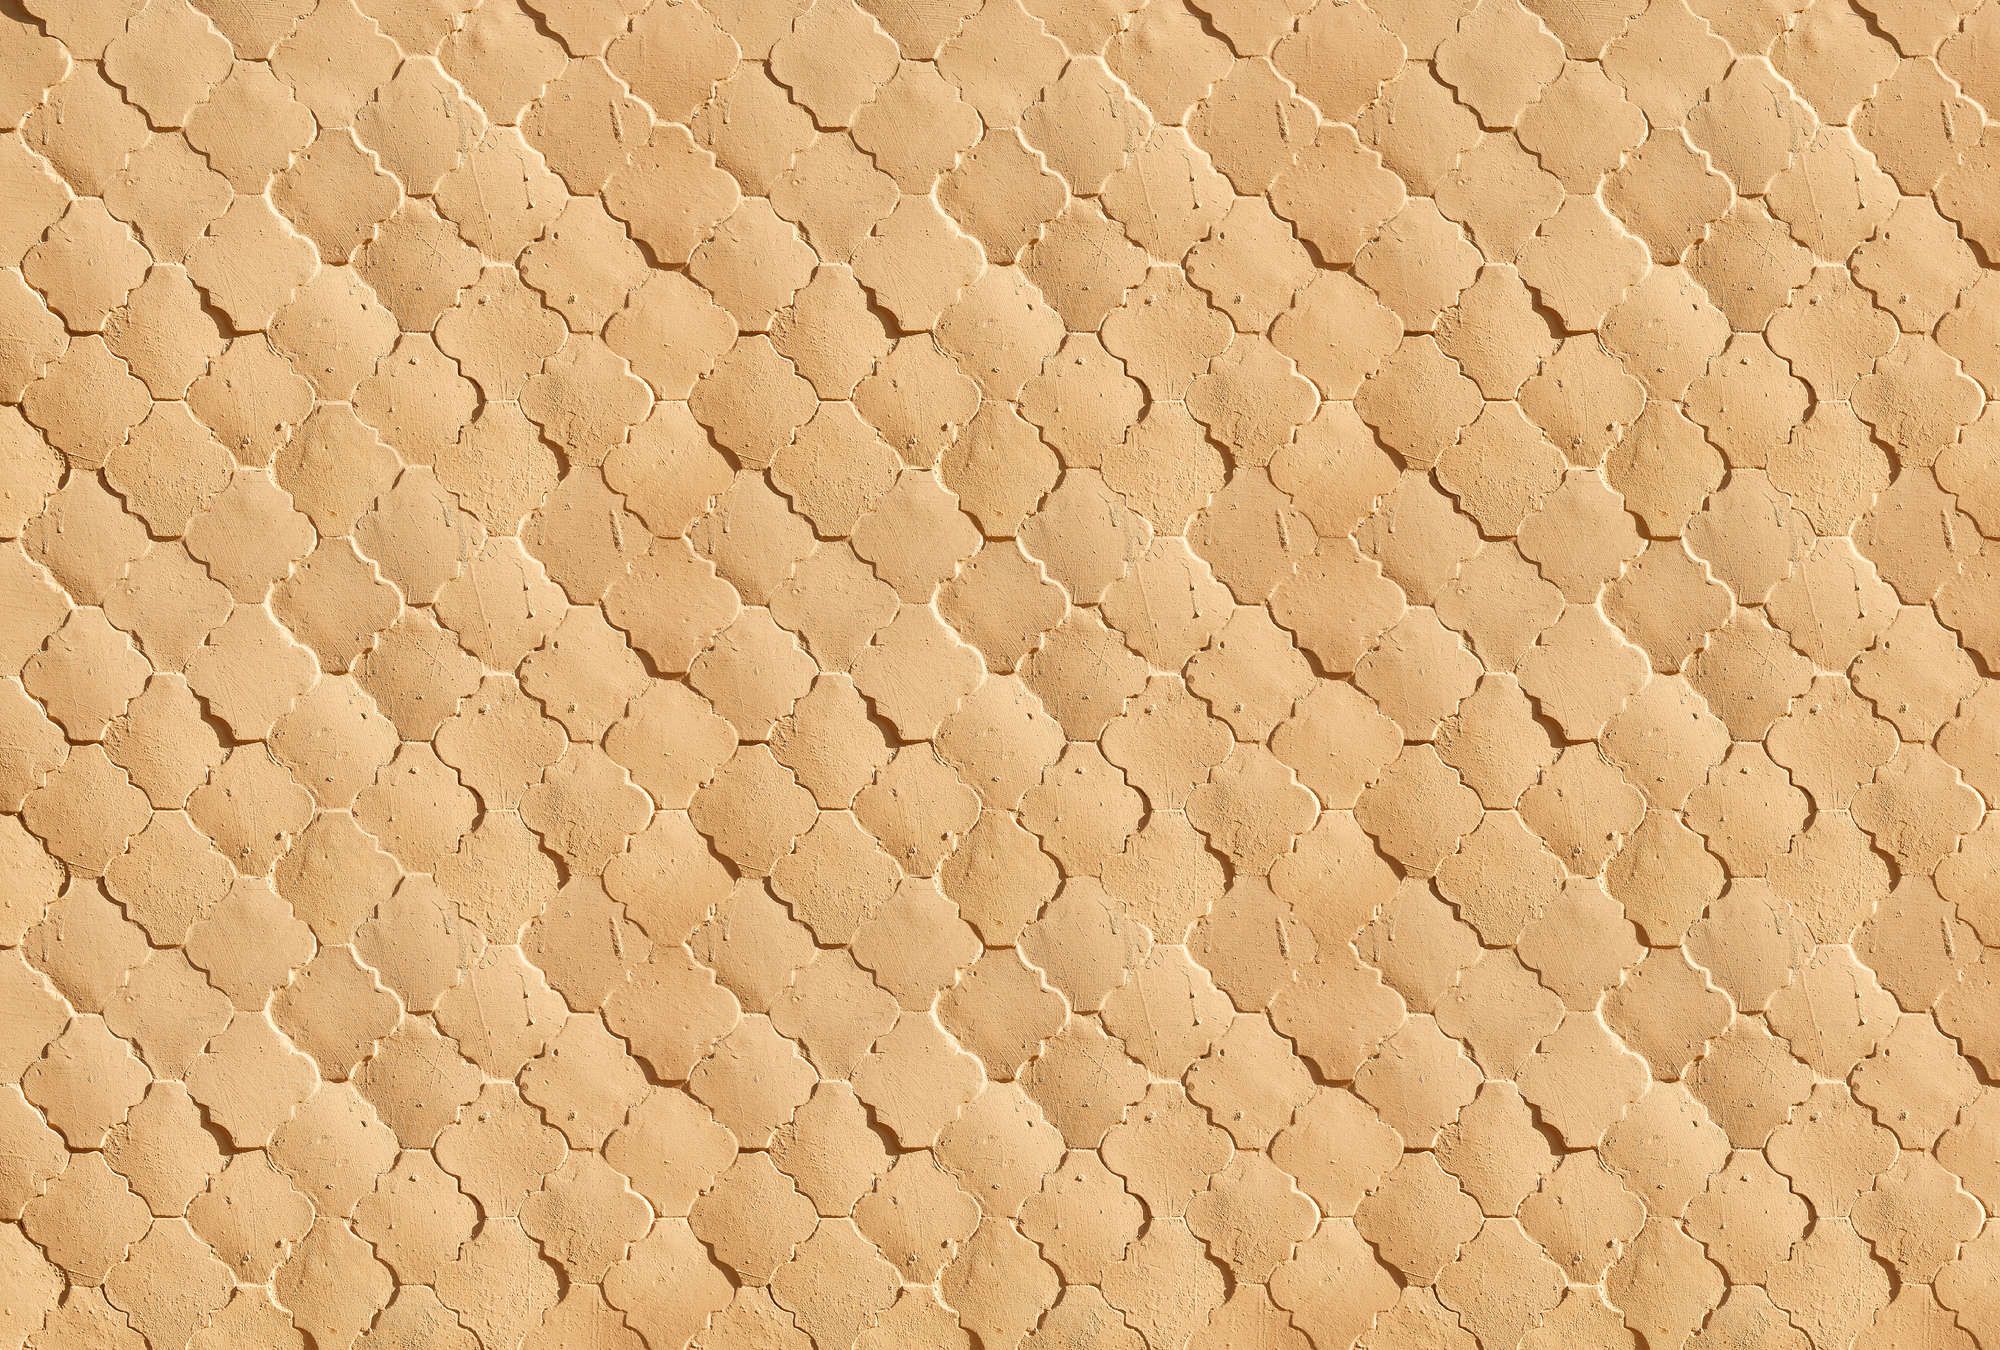             Fotomuralis »siena« - Motivo mediterraneo a piastrelle nei colori della sabbia - Materiali non tessuto leggermente strutturato
        